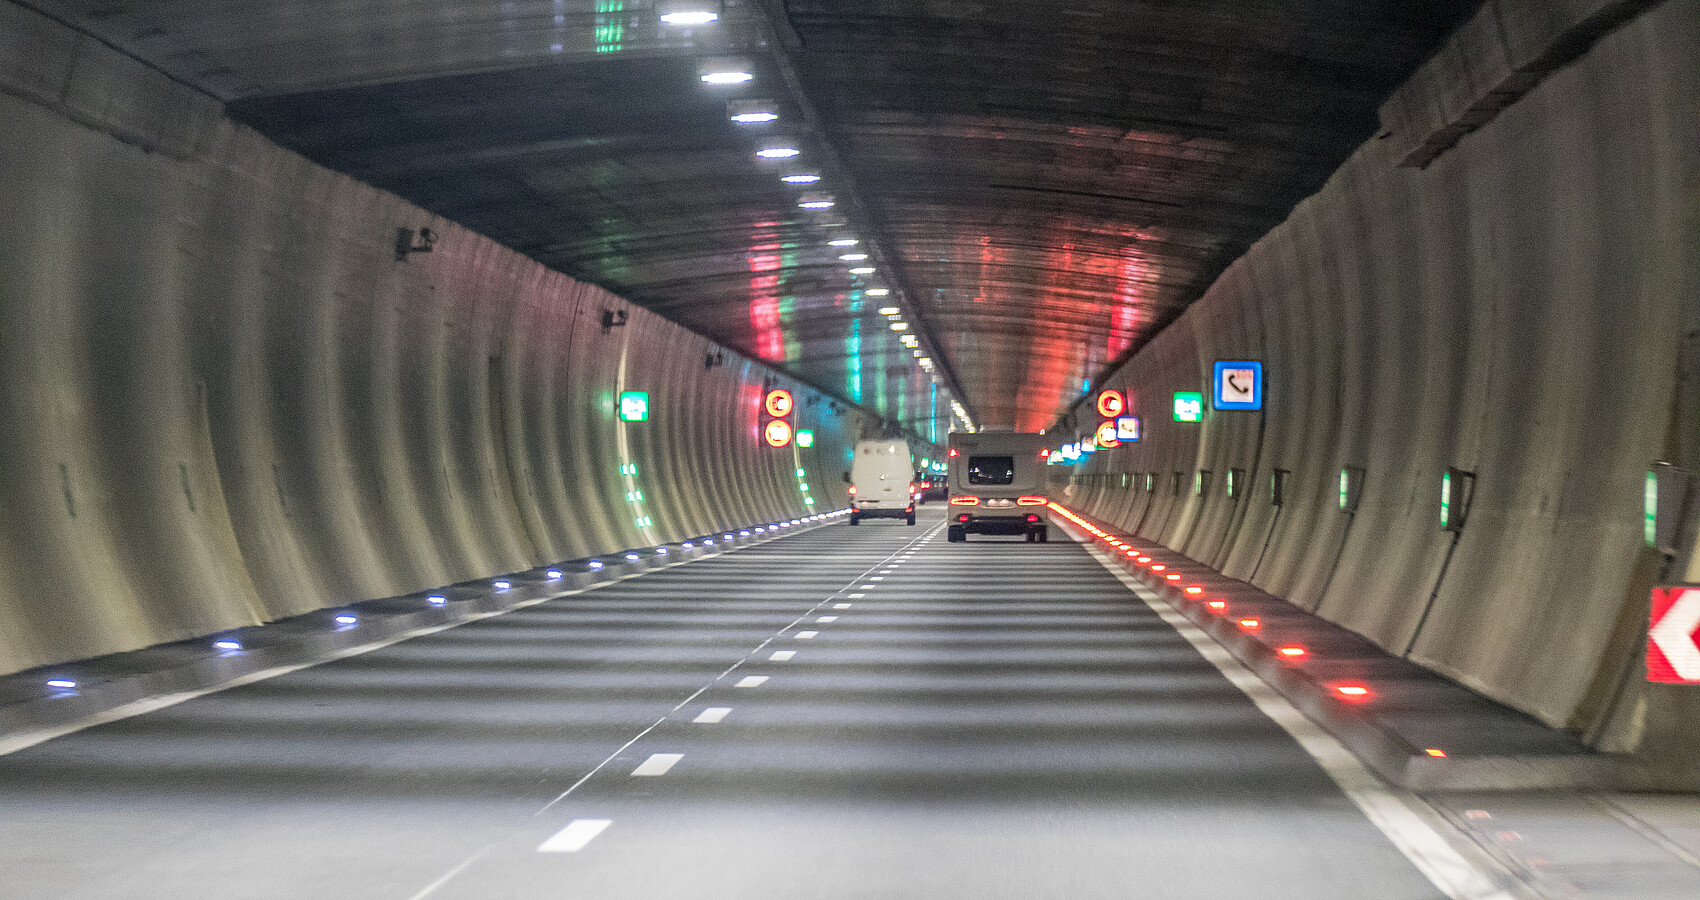 Blick in einen Straßentunnel, durch den Autos fahren